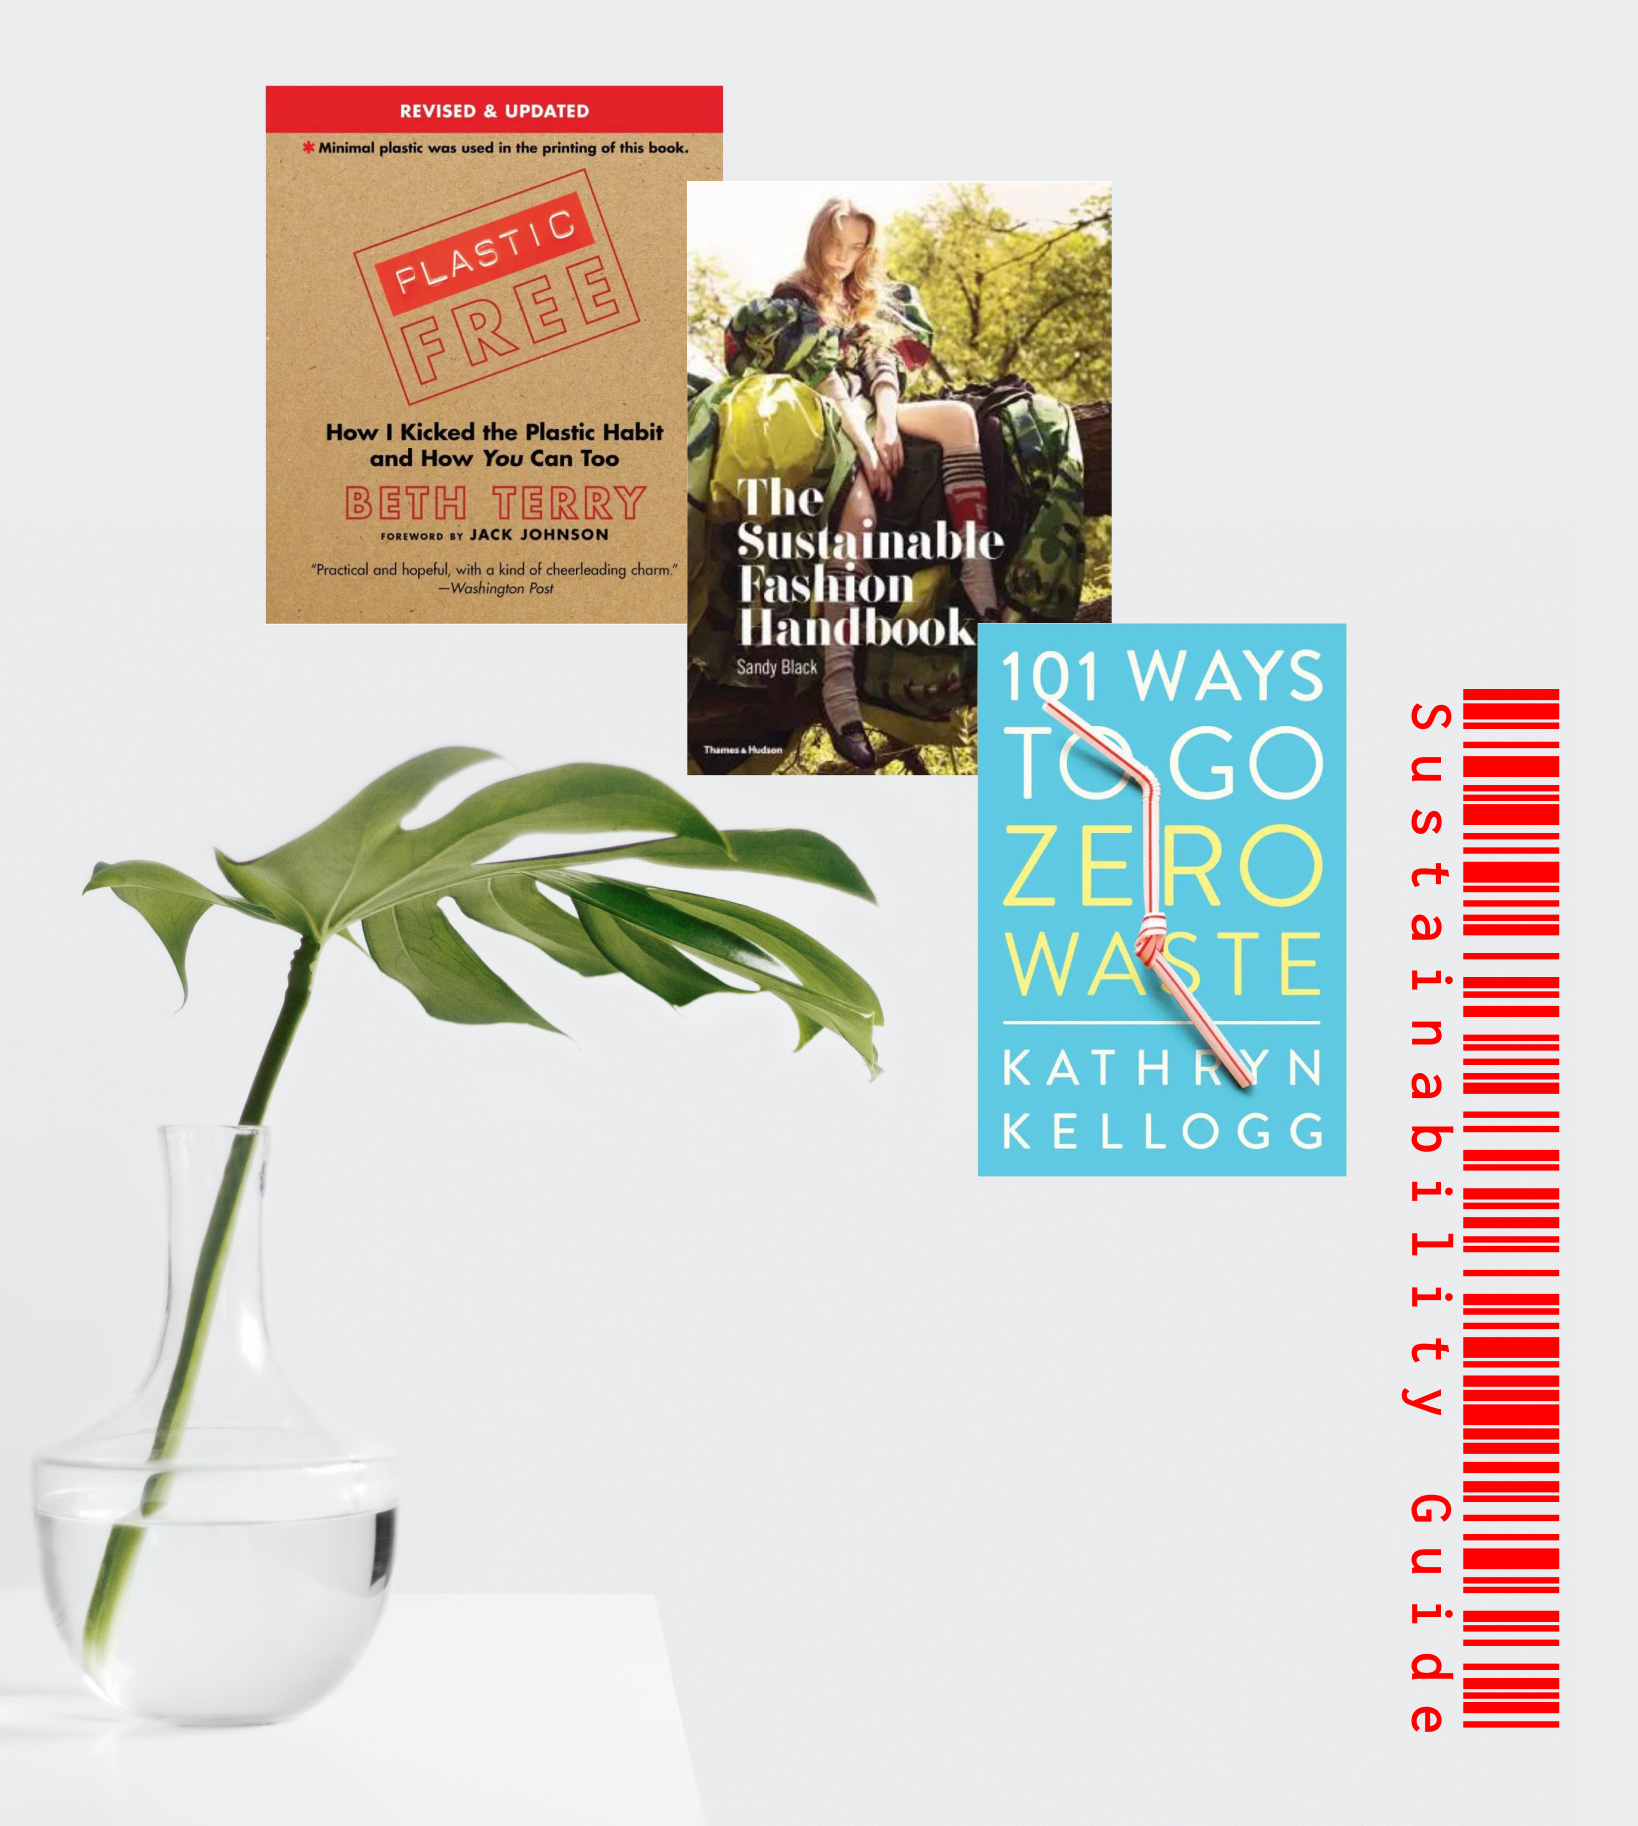 Sustainability Guide: 10 книг об осознанном потреблении, которые стоит прочесть каждому-Фото 1